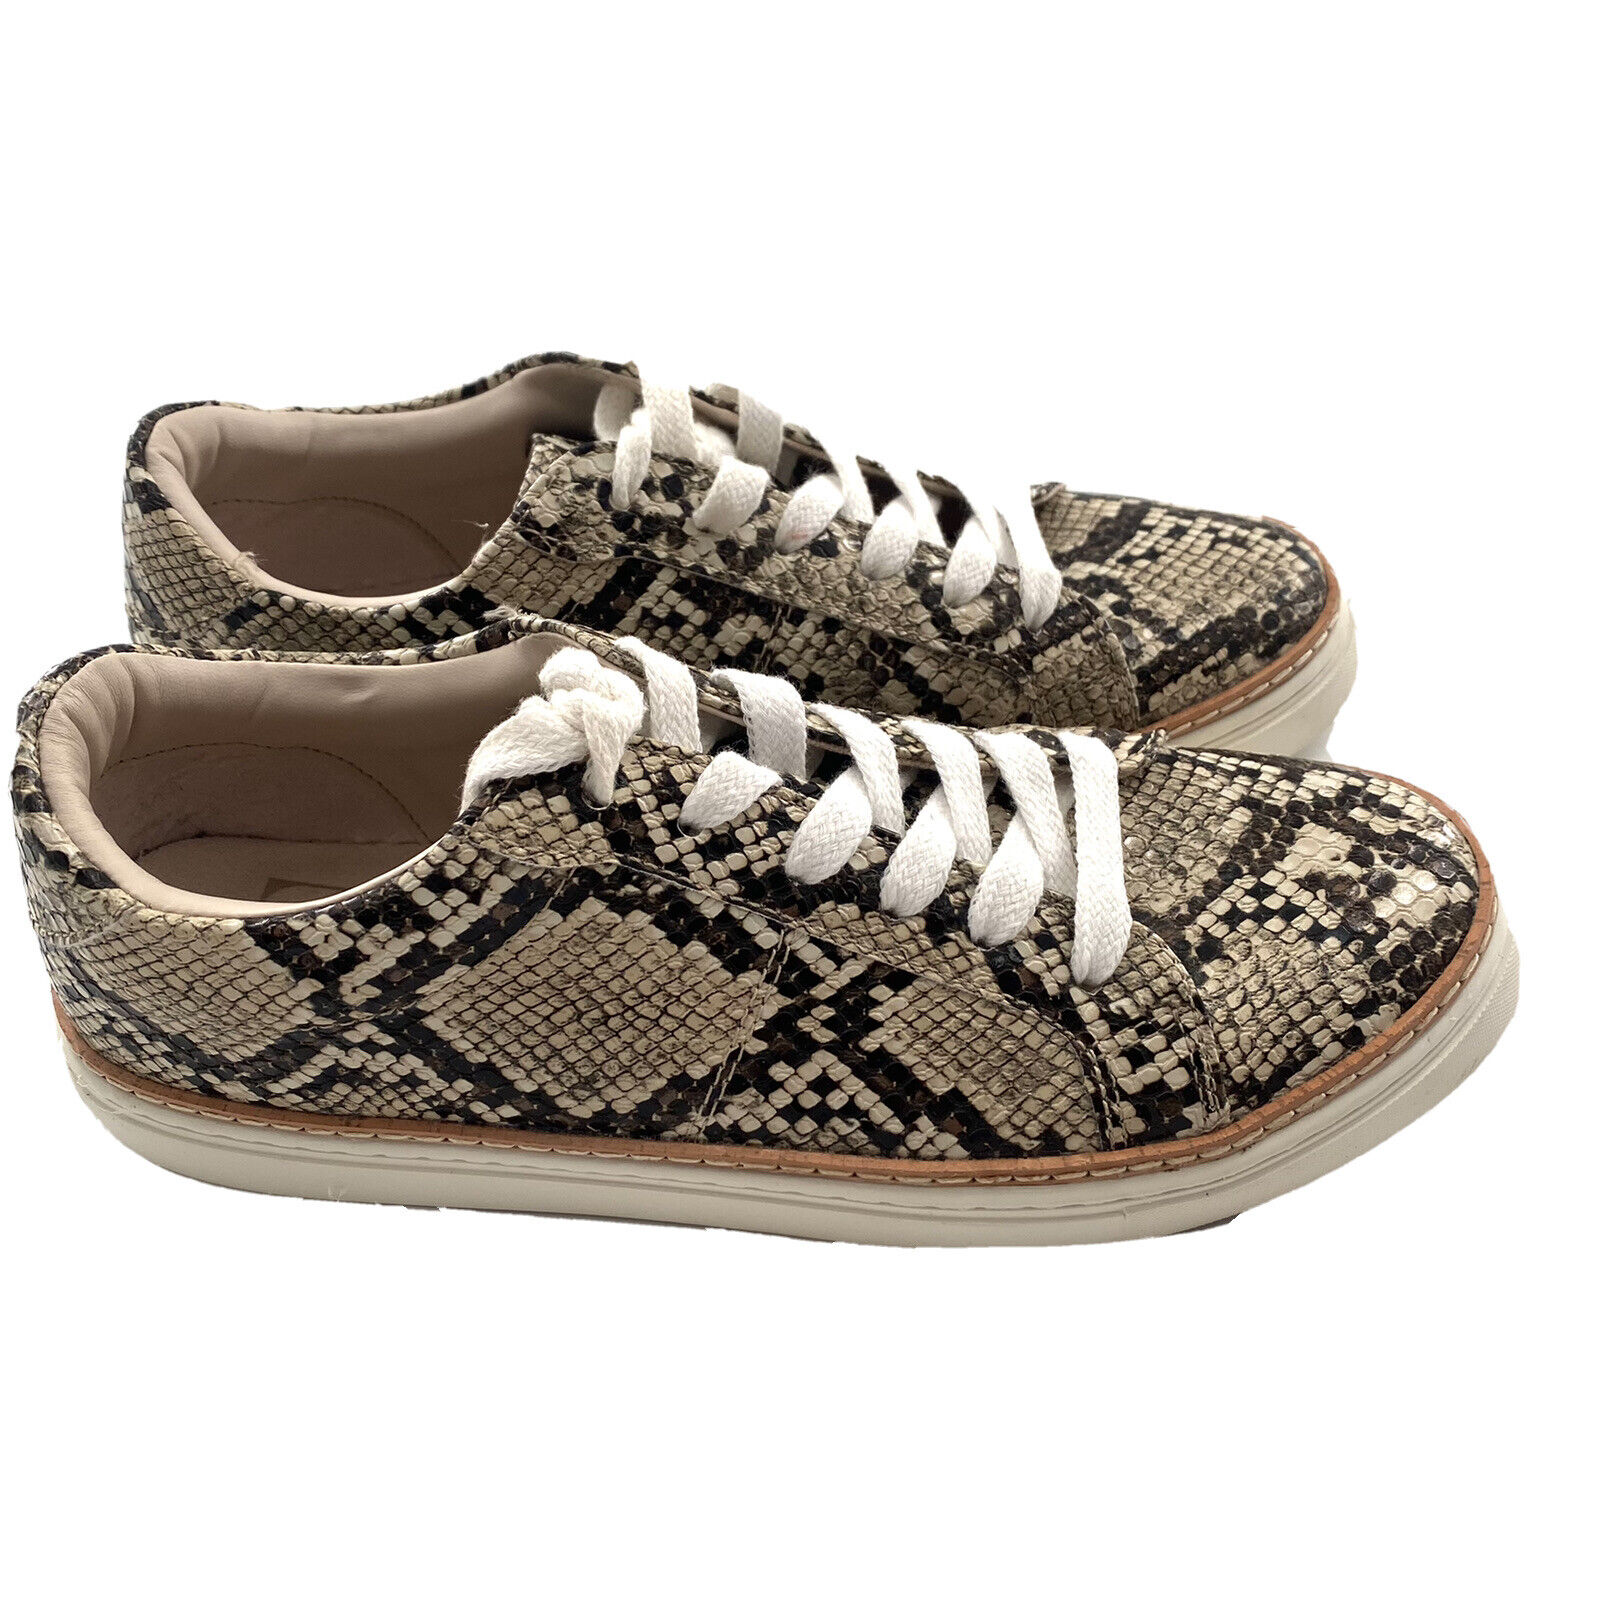 Zara Sneaker Snake Print Lace Up Shoes Size 38 Keds Animal Print Python |  eBay